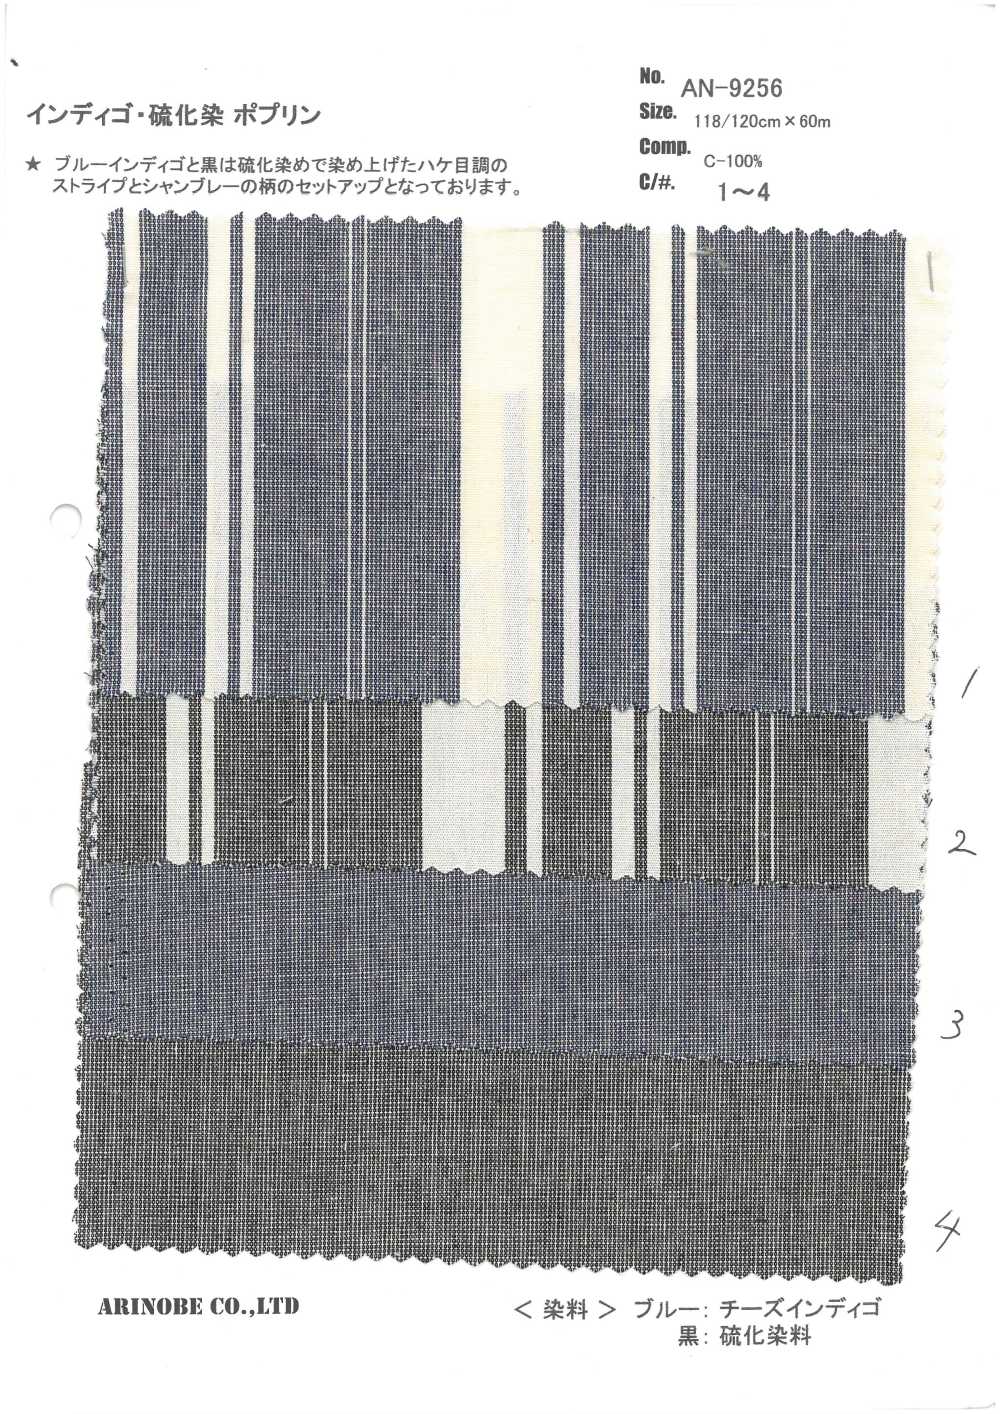 AN-9256 Indigo/Sulfid Gefärbte Popeline[Textilgewebe] ARINOBE CO., LTD.